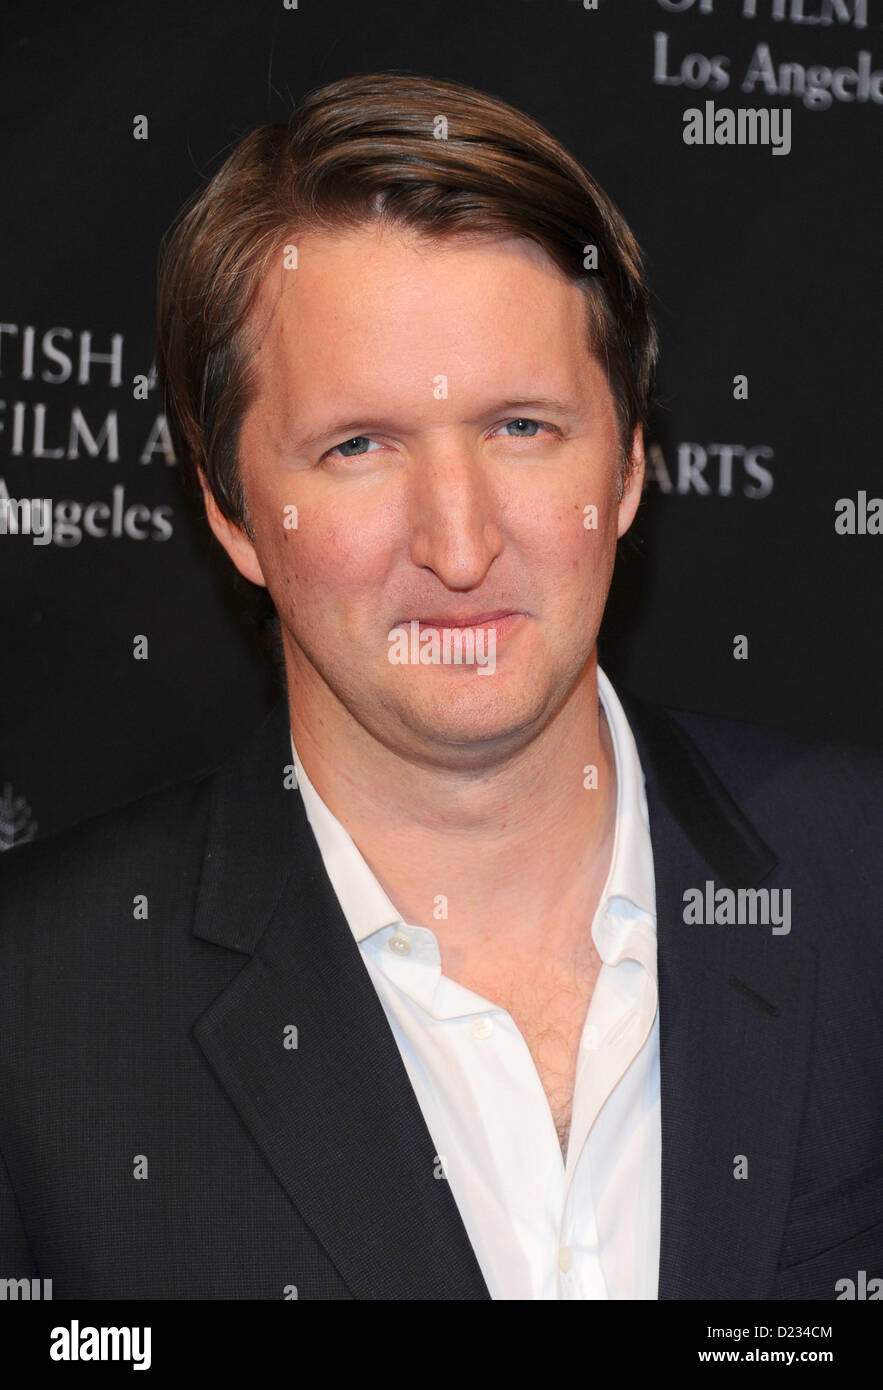 Tom Hooper arrive à la saison des prix BAFTA tea party à Beverly Hills, l'Amérique, le 12 janvier 2013 Banque D'Images